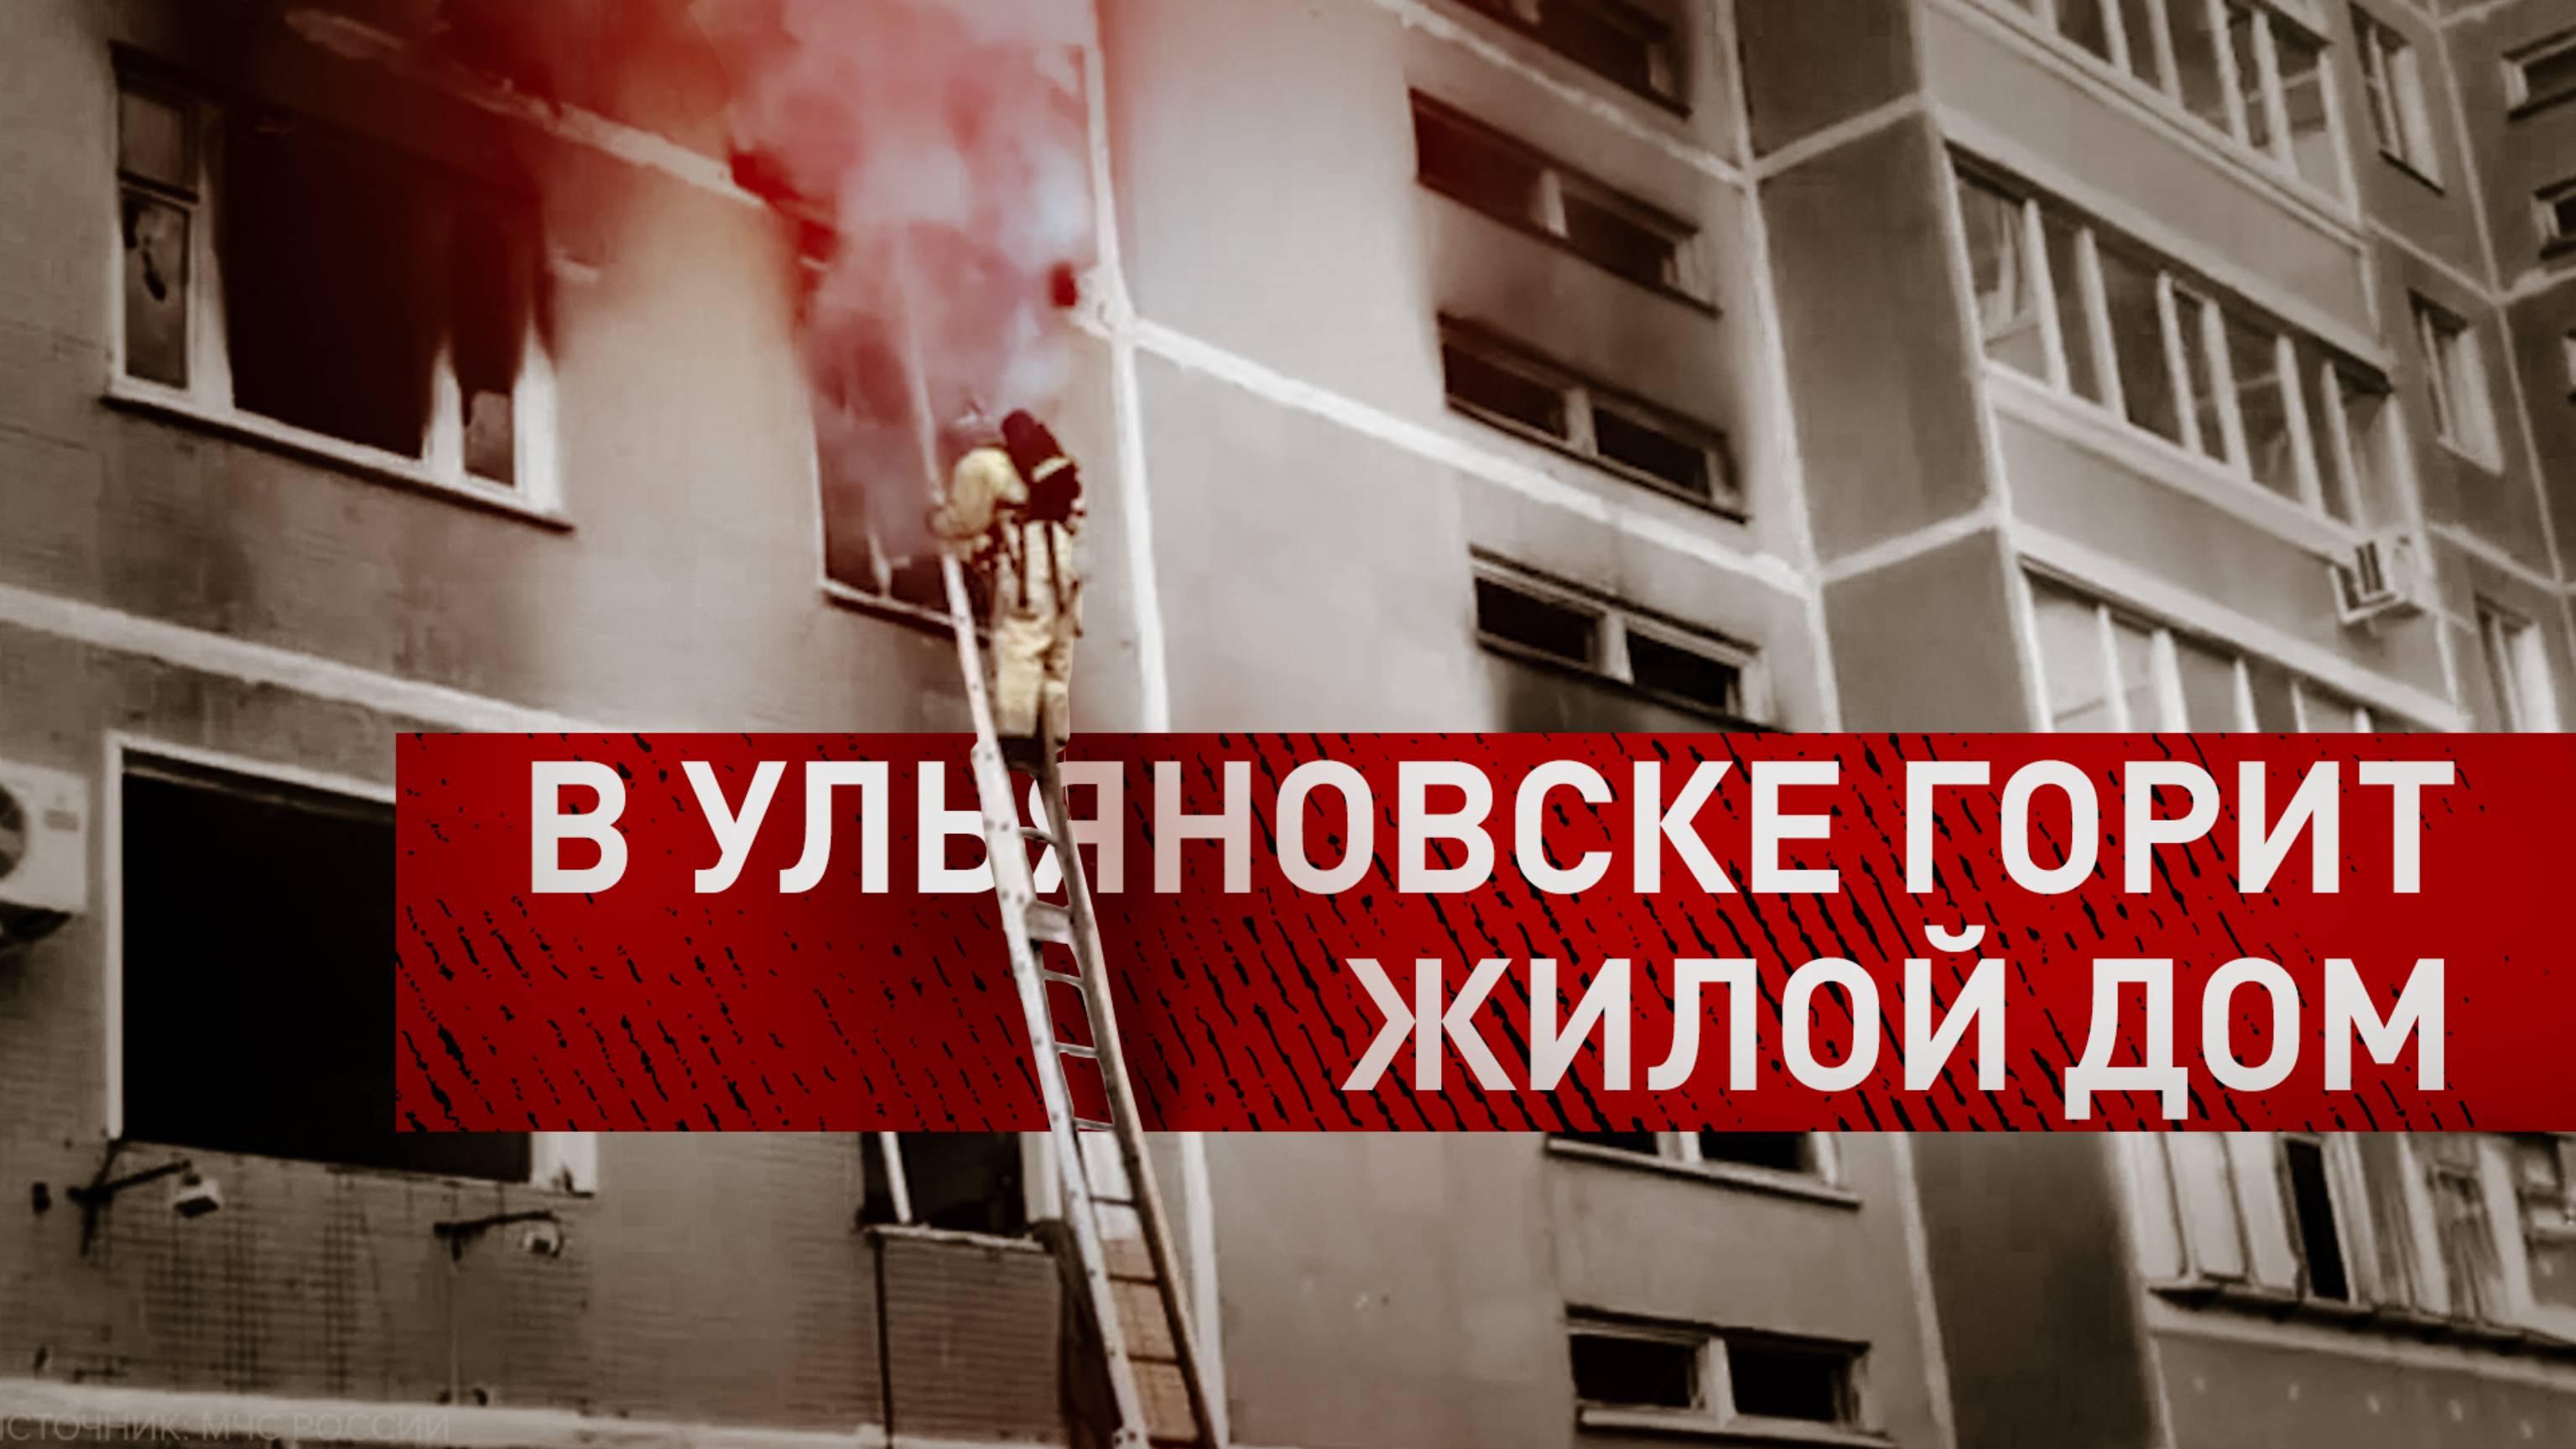 Ликвидация пожара в многоквартирном доме в Ульяновске